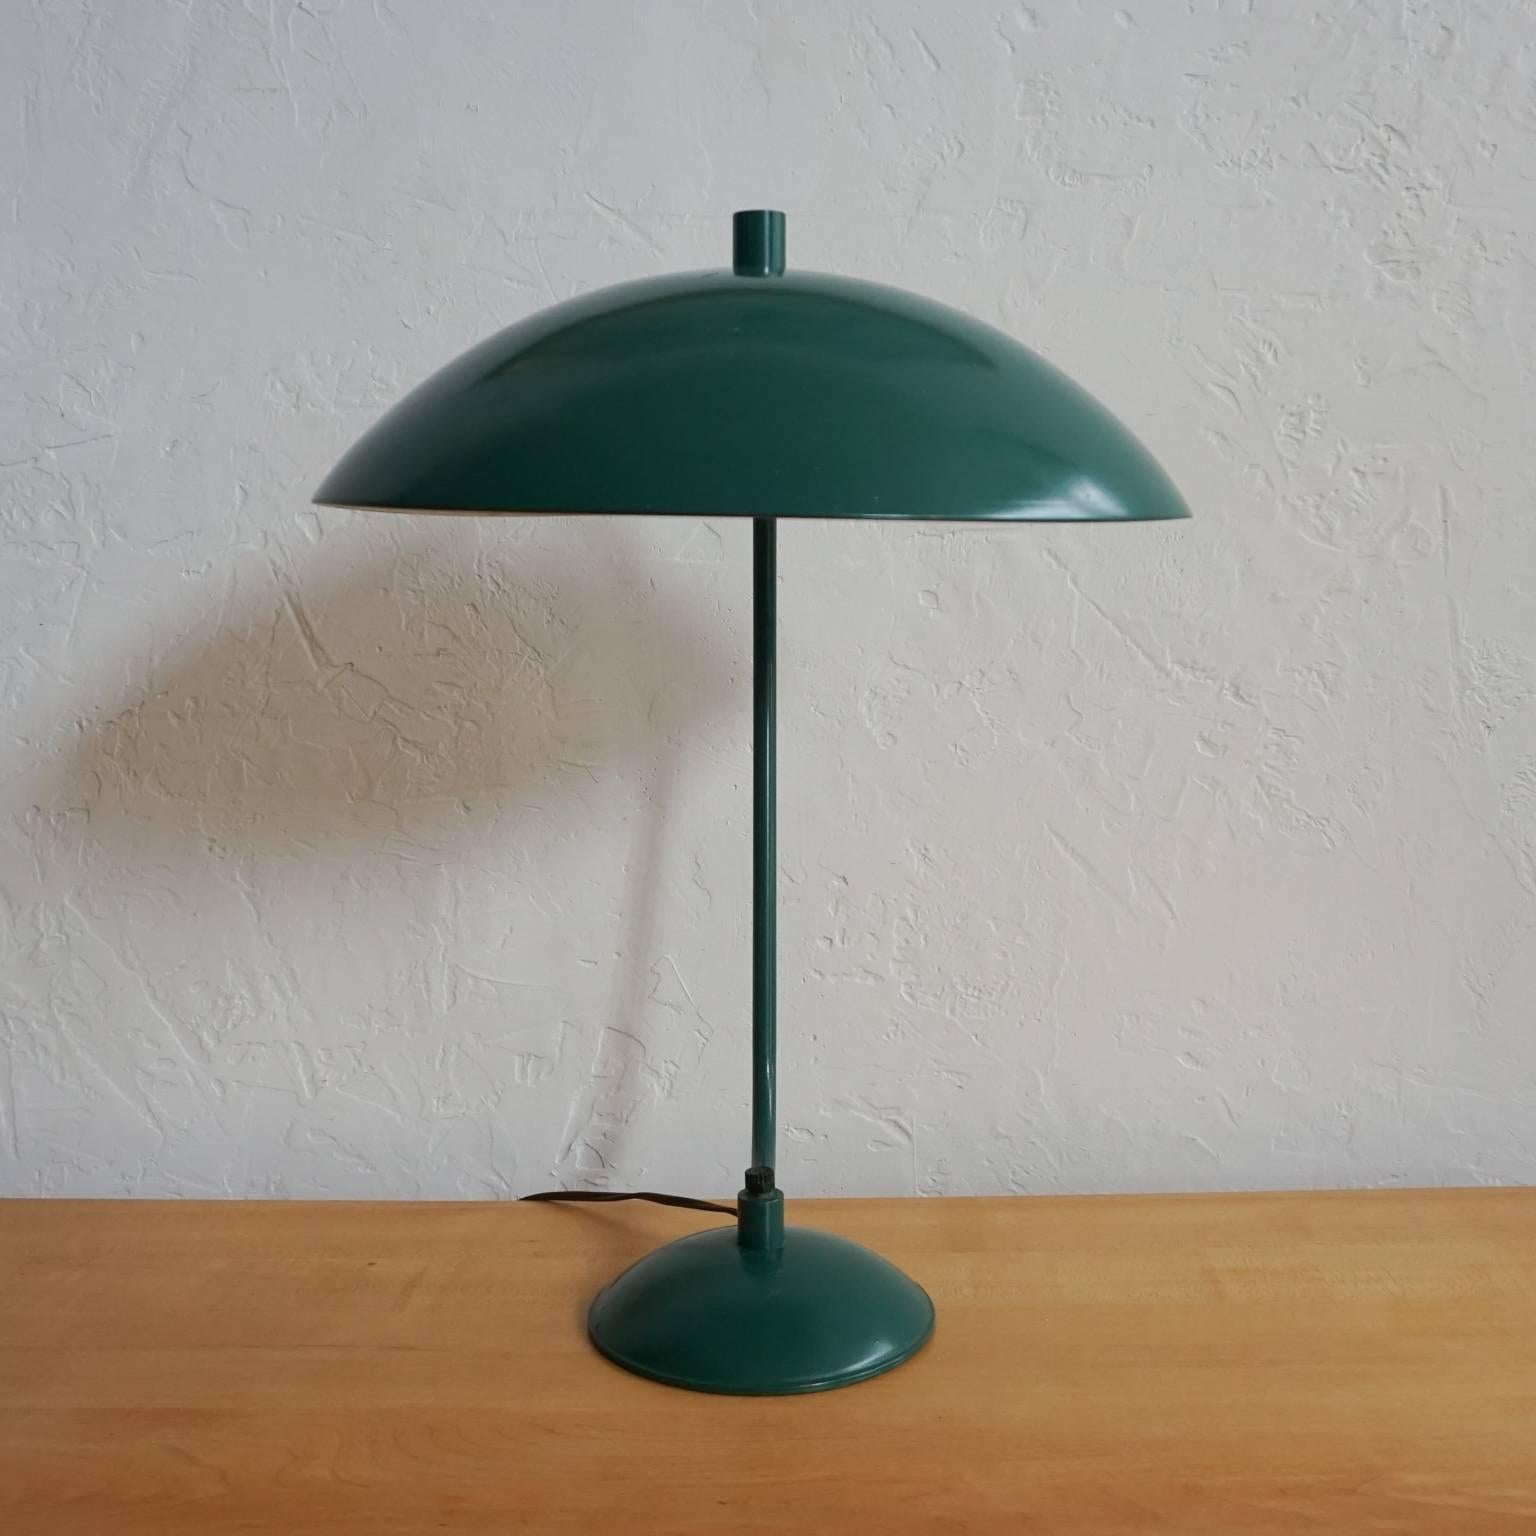 Enameled green steel desk lamp by Kurt Versen.